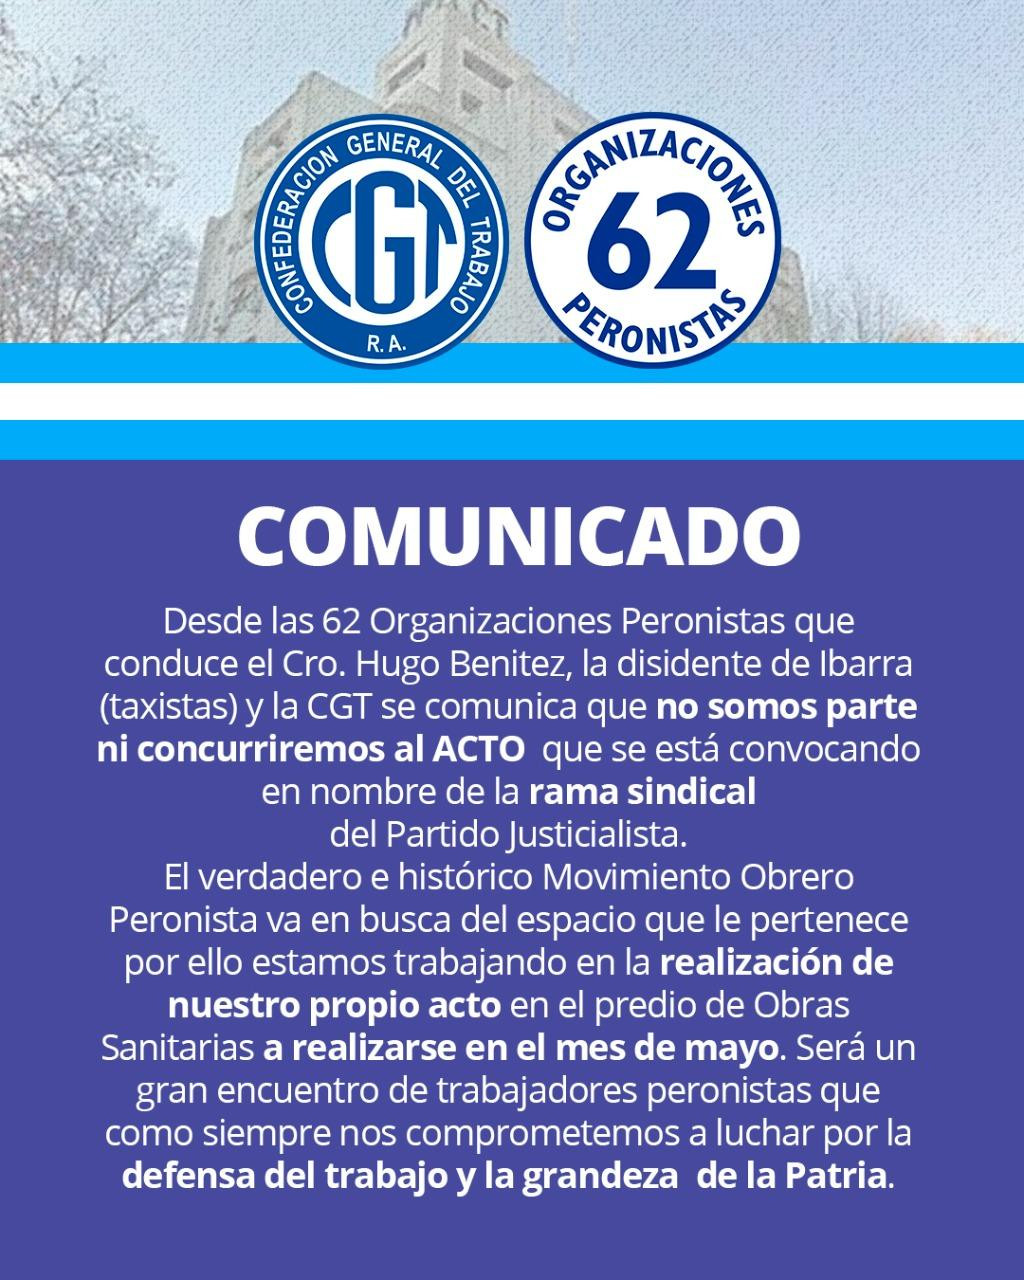 Comunicado de la CGT - Organizaciones Peronistas